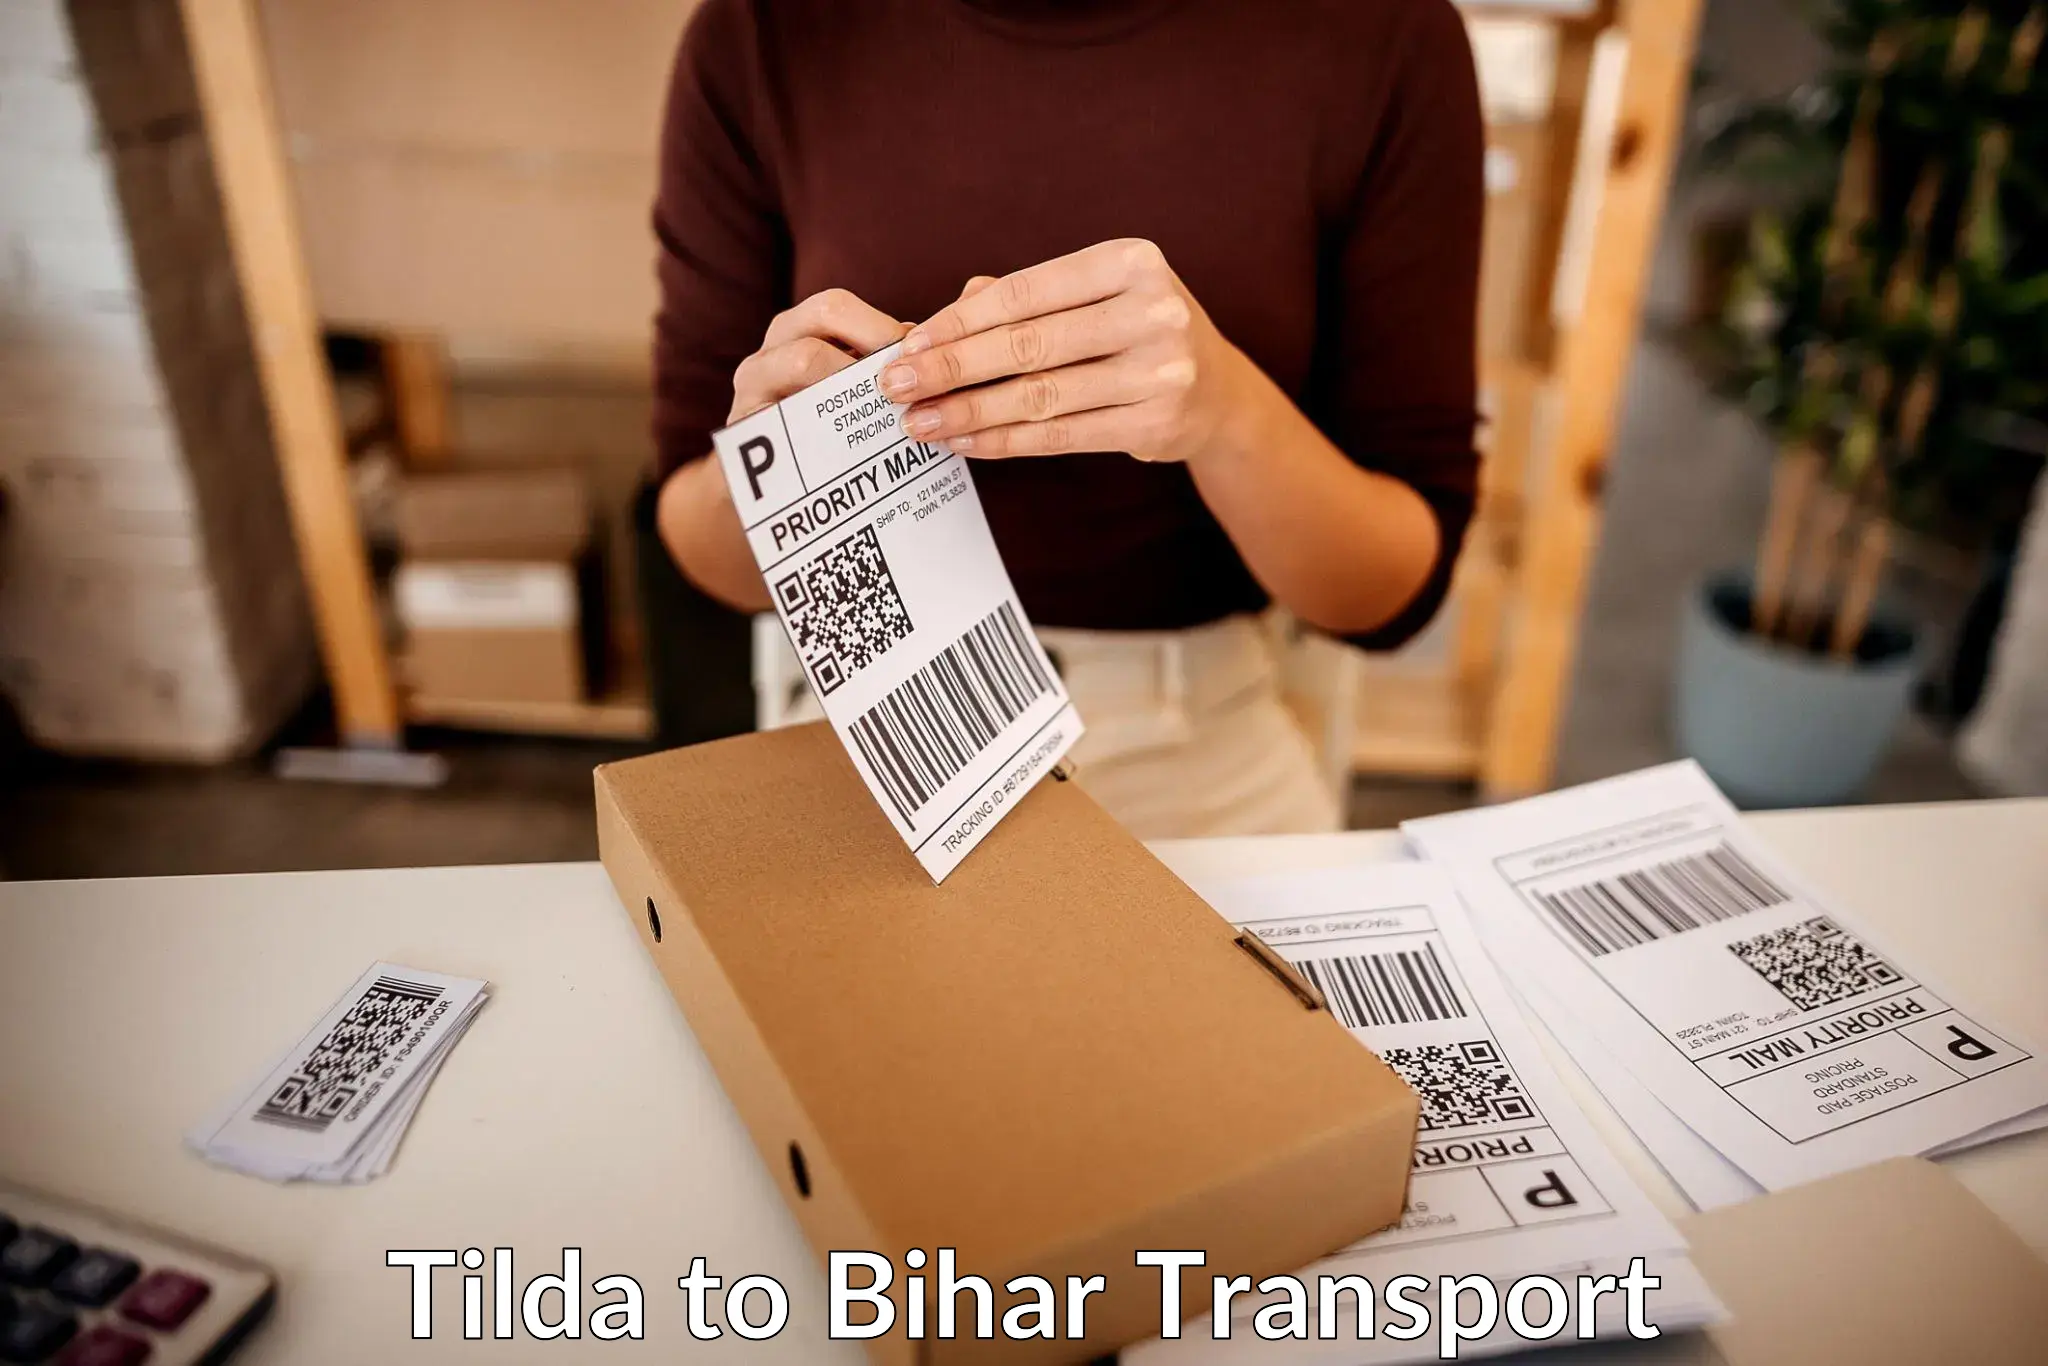 Express transport services Tilda to Sandesh